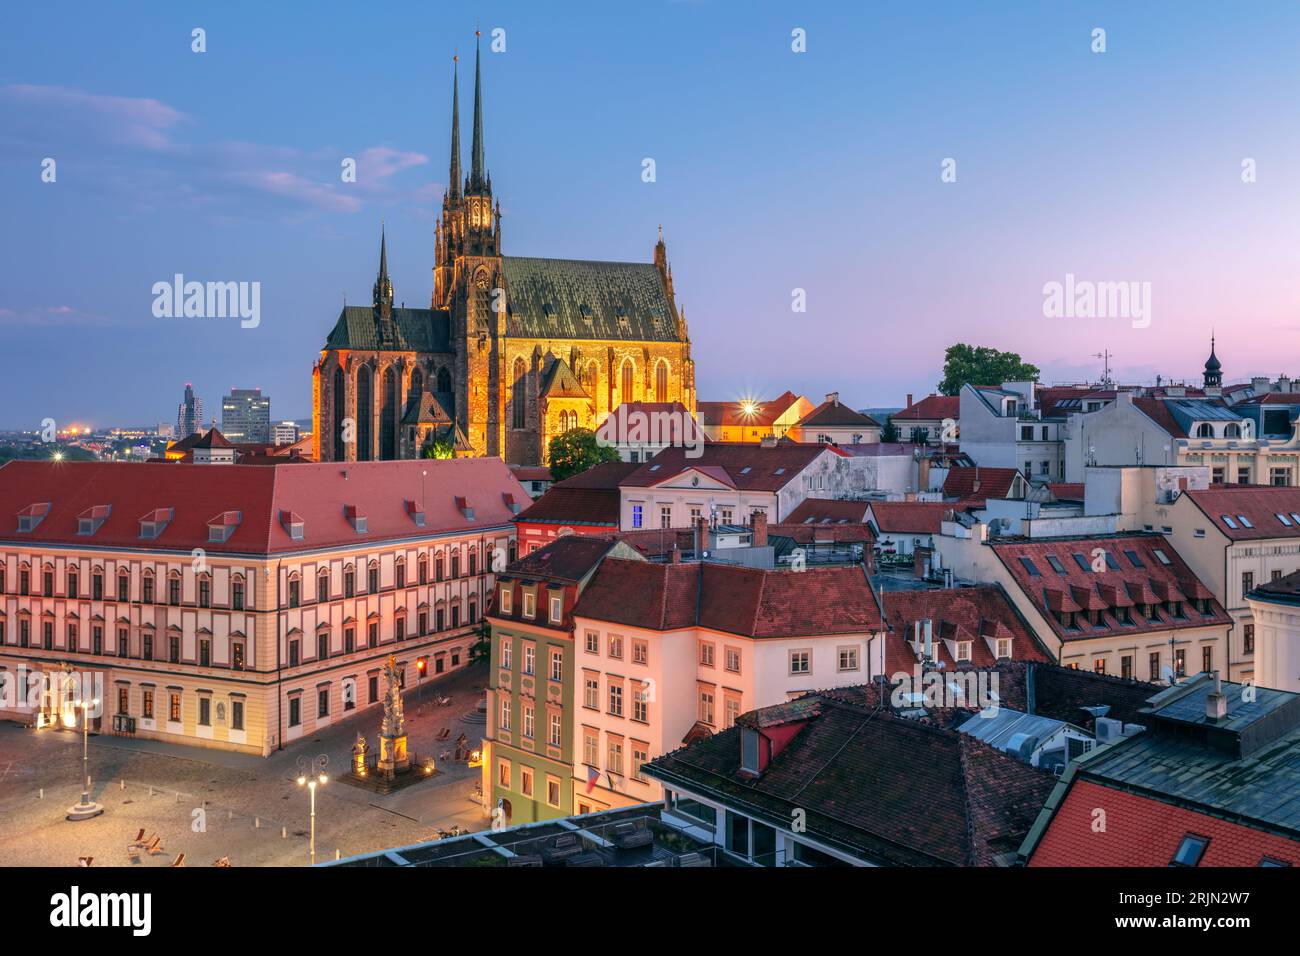 Brno, Repubblica Ceca. Immagine aerea del paesaggio urbano di Brno, la seconda città più grande della Repubblica Ceca con la Cattedrale di San Peter e Paul al tramonto d'estate. Foto Stock